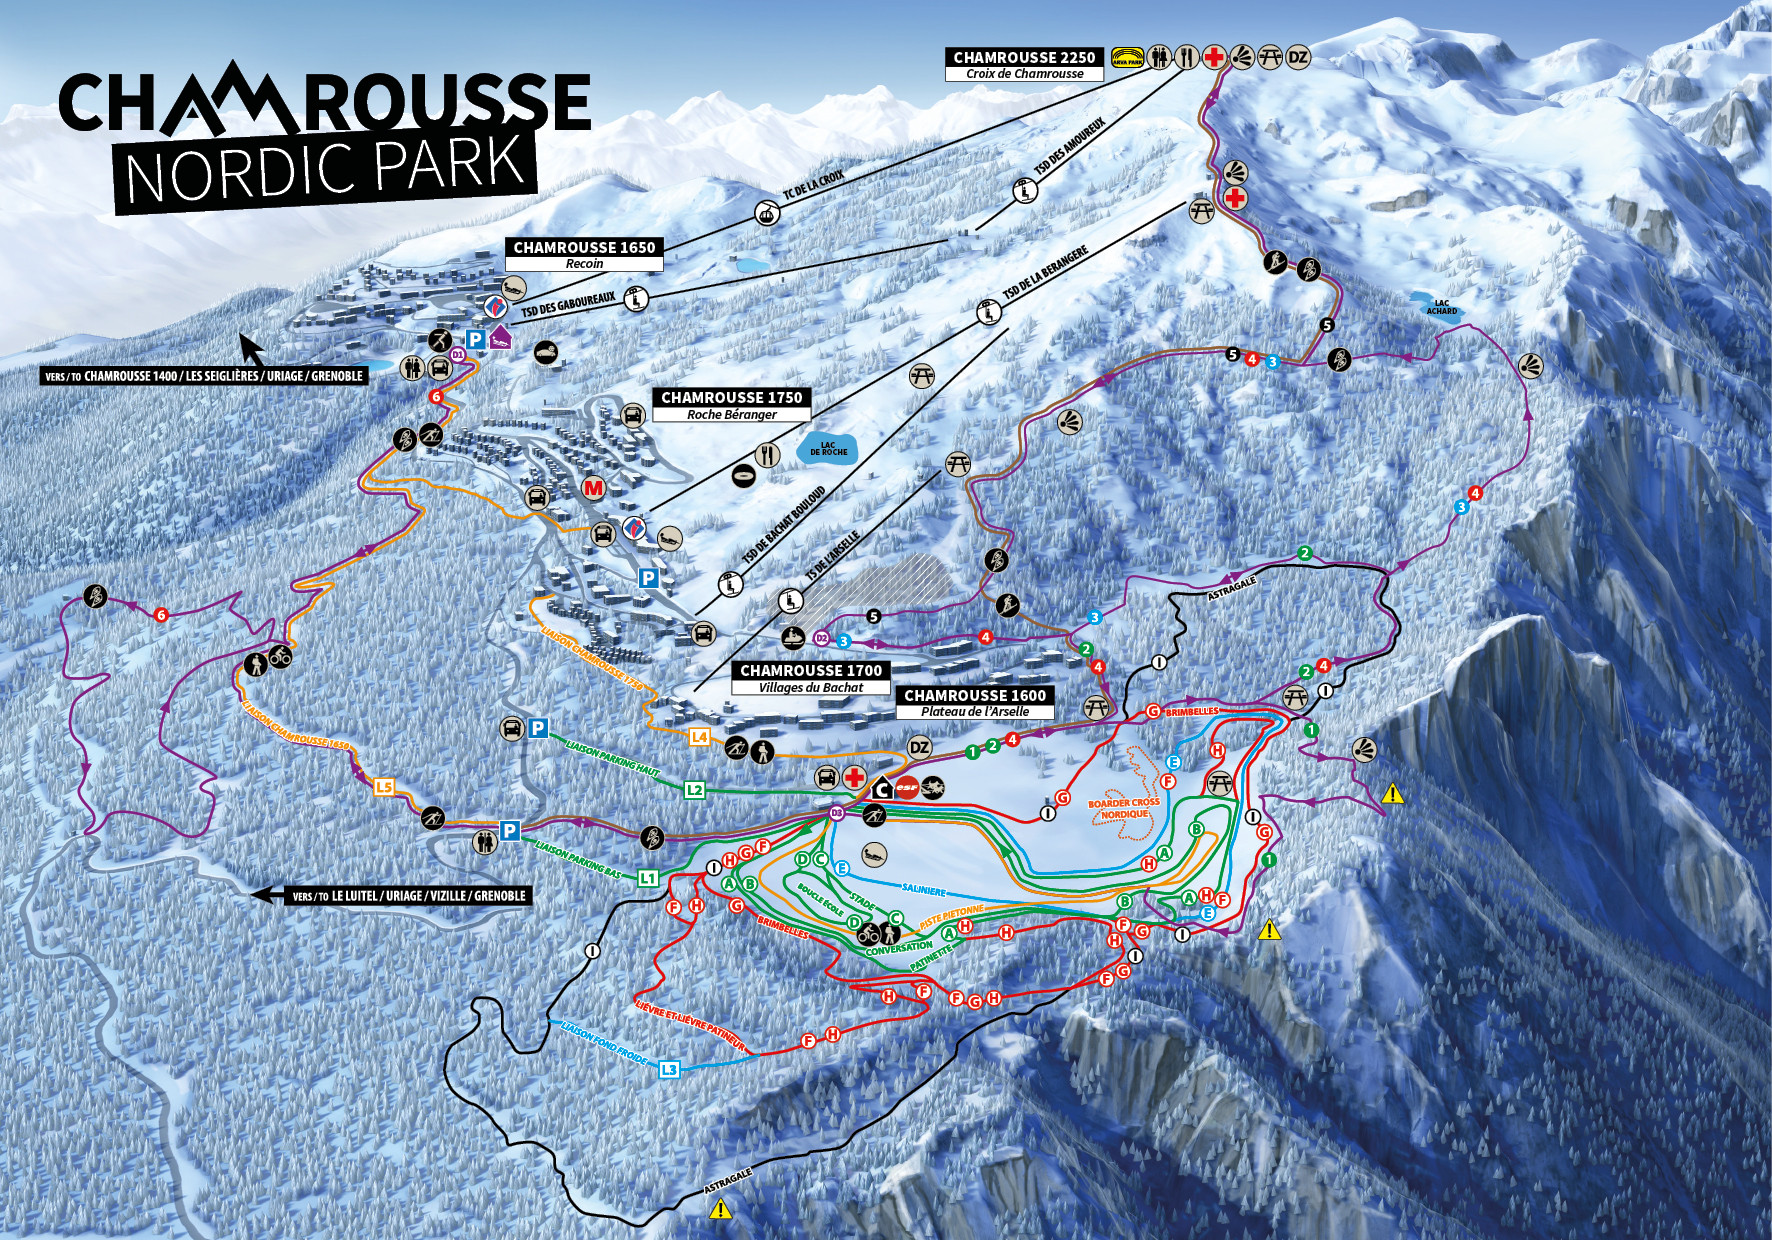 Chamrousse plan ski fond nordique sentier piéton raquettes itinéraire hiver 2021-2022 station montagne grenoble isère alpes france